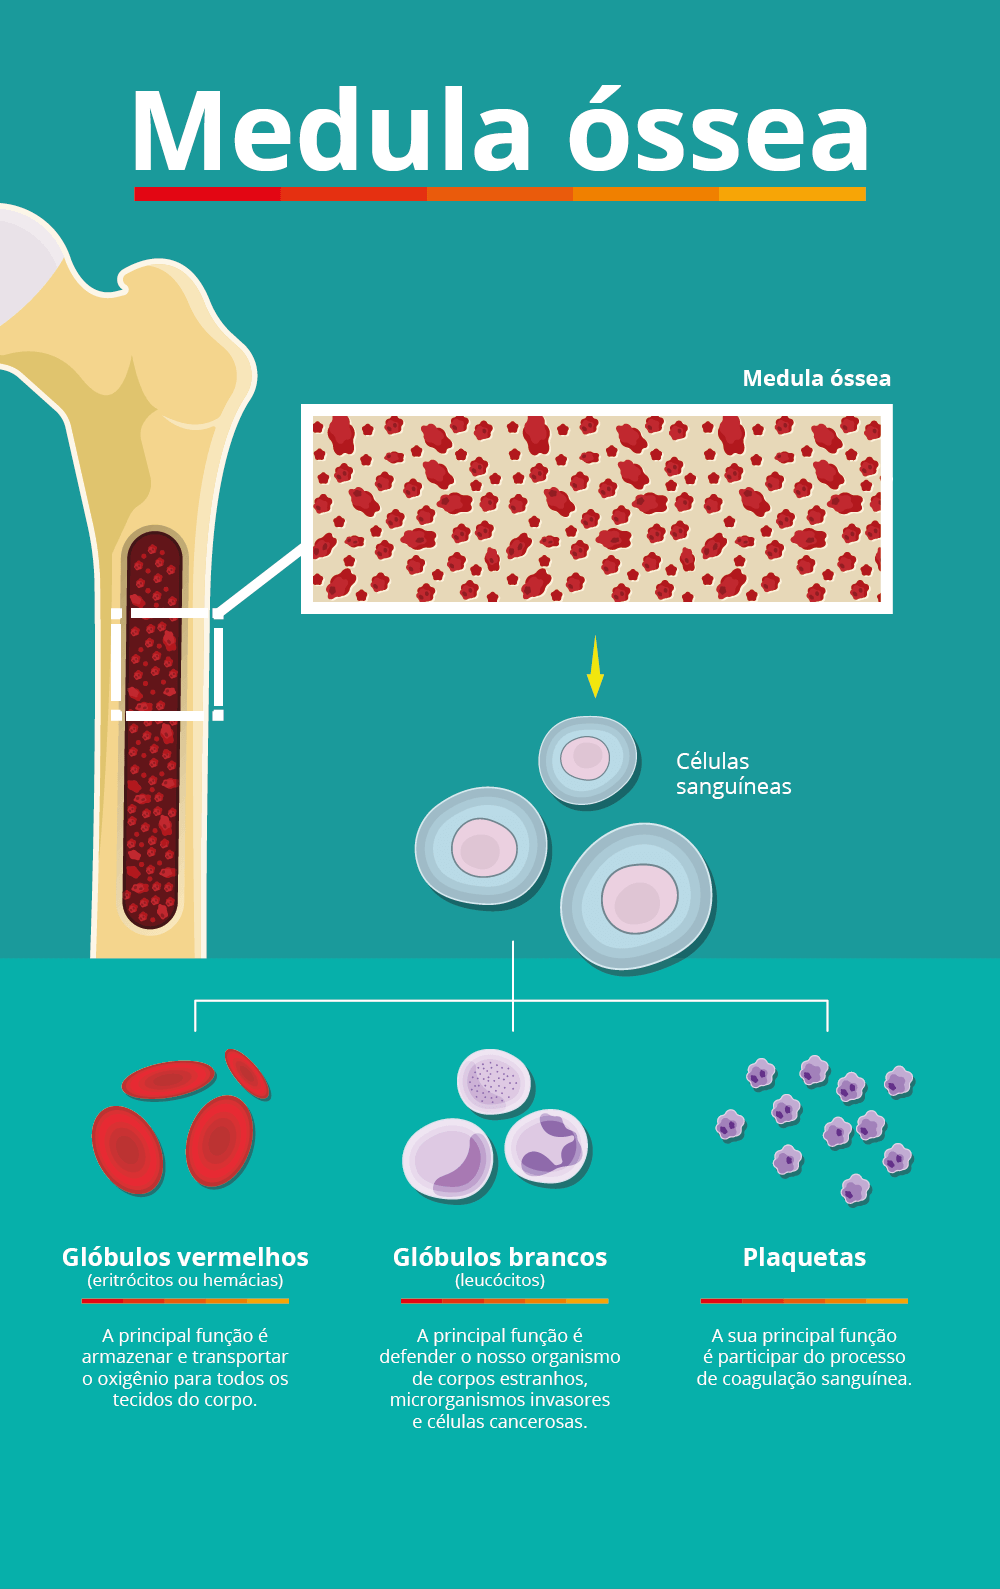 Ilustração que mostra os componentes da medula óssea, local onde ocorre o acúmulo de células brancas cancerígenas que causam a leucemia.